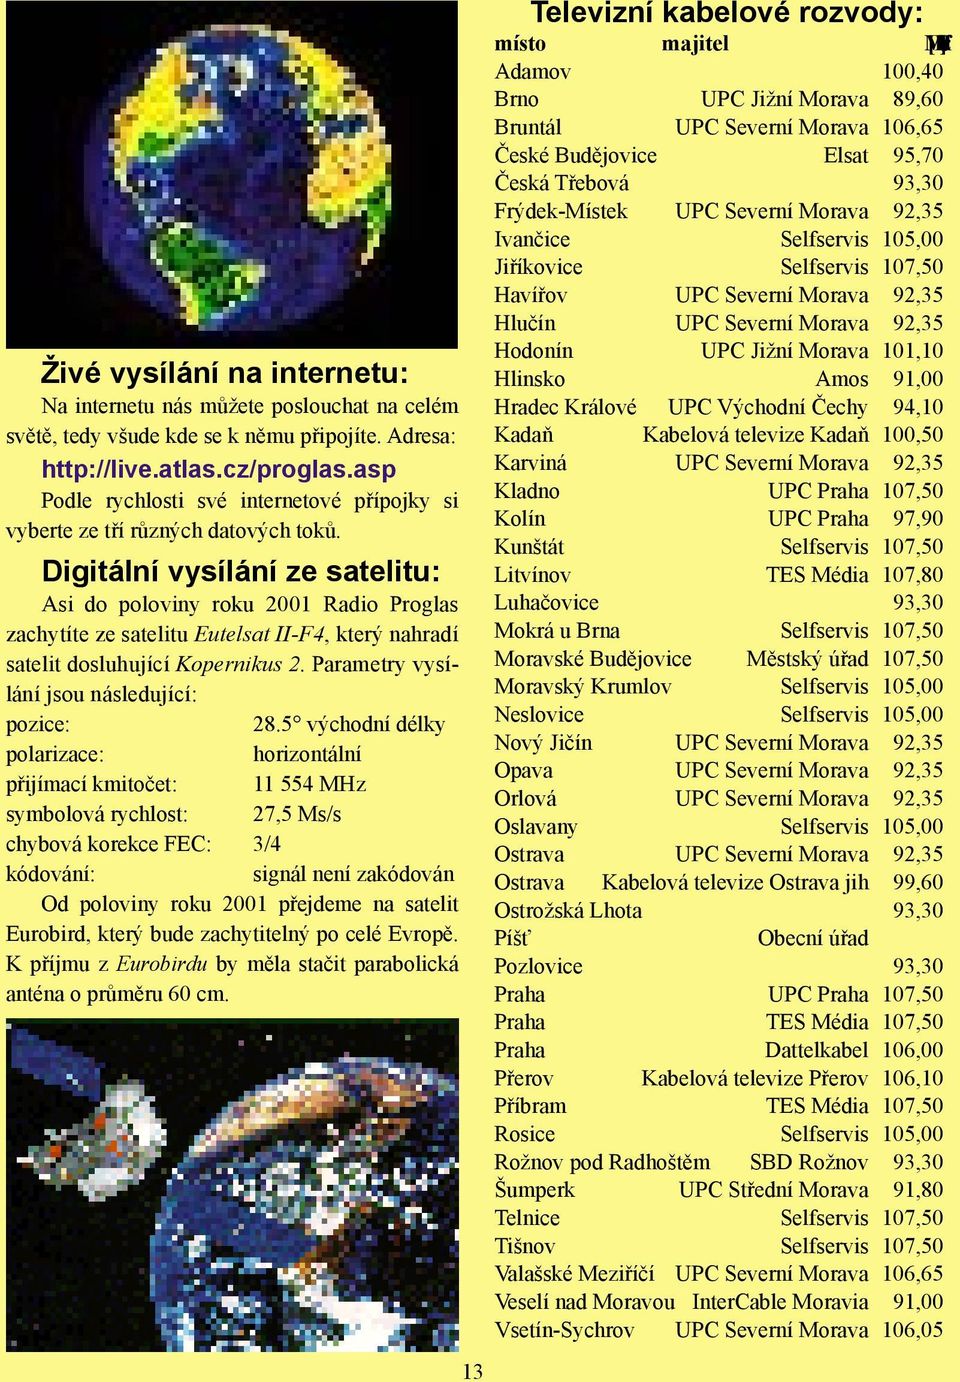 Digitální vysílání ze satelitu: Asi do poloviny roku 2001 Radio Proglas zachytíte ze satelitu Eutelsat II-F4, který nahradí satelit dosluhující Kopernikus 2.